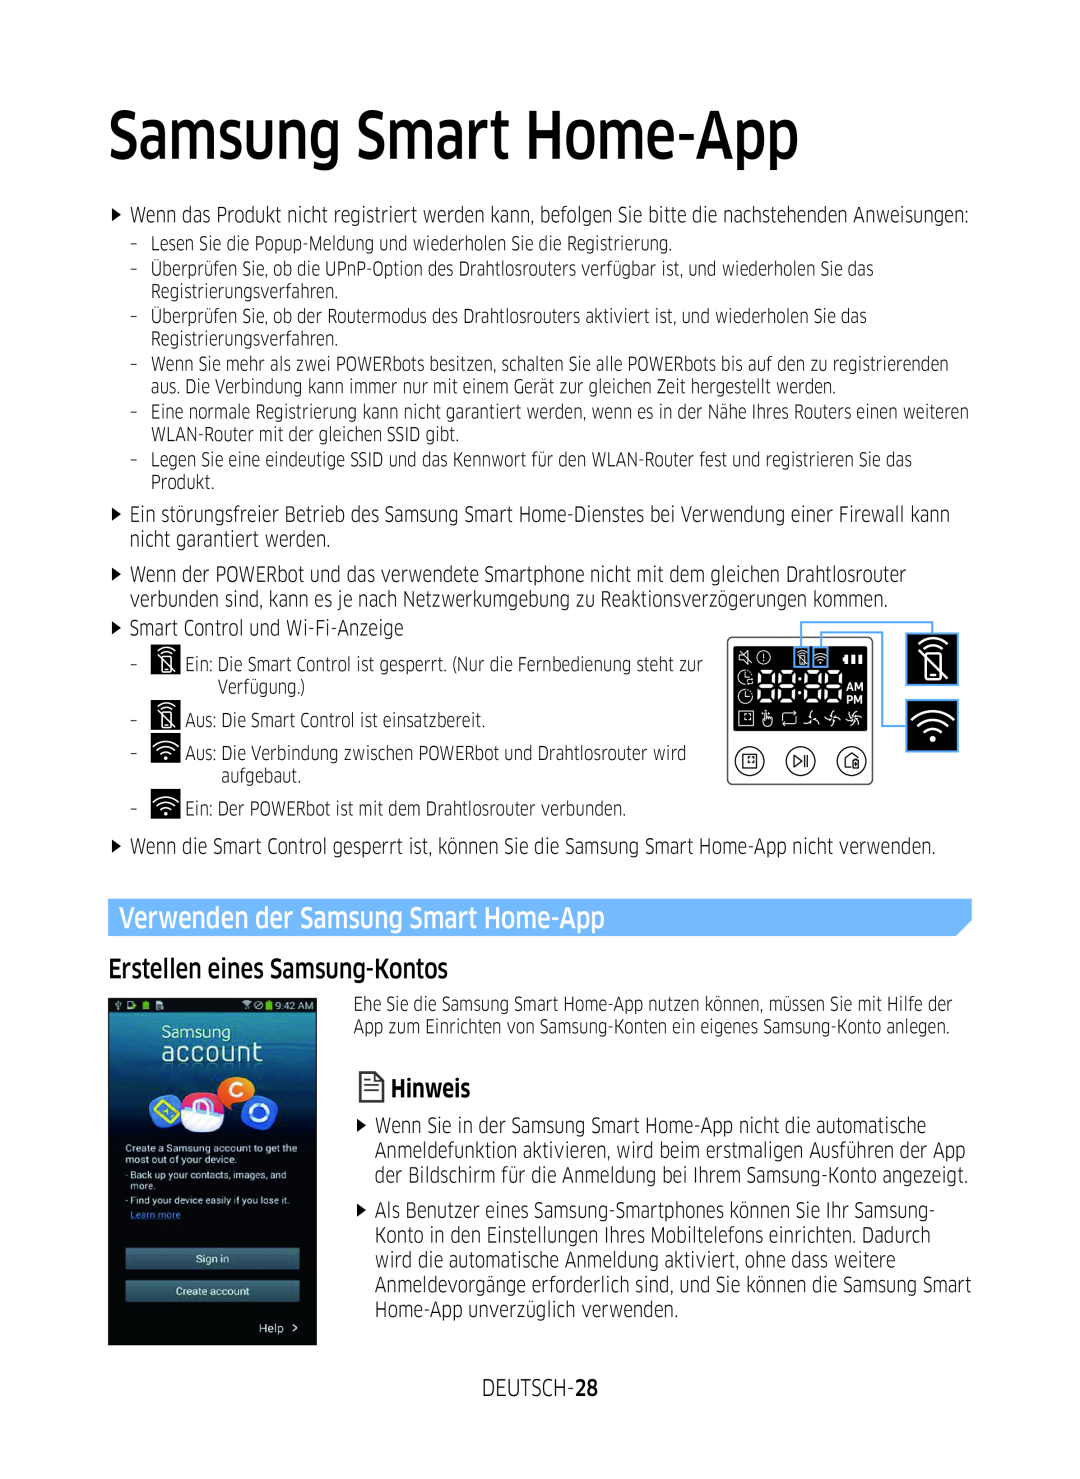 Samsung VR1DM7020UH/EG, VR2GM7050UU/EG manual Verwenden der Samsung Smart Home-App, Erstellen eines Samsung-Kontos, Hinweis 